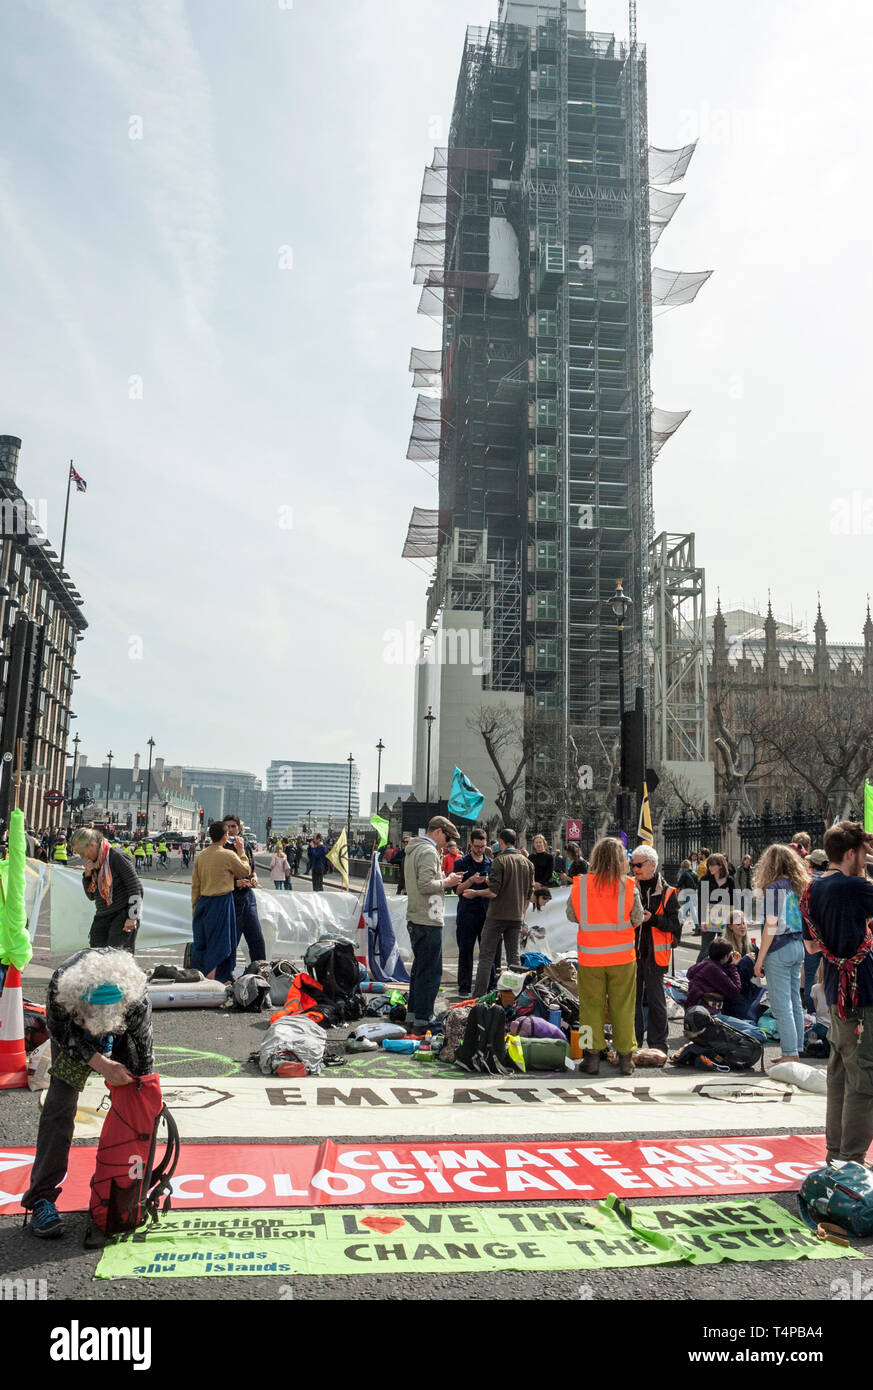 Jeunes manifestants de l'Extinction, rébellion, occupent la place du Parlement, Londres l'affichage de bannières sur le changement climatique. Banque D'Images